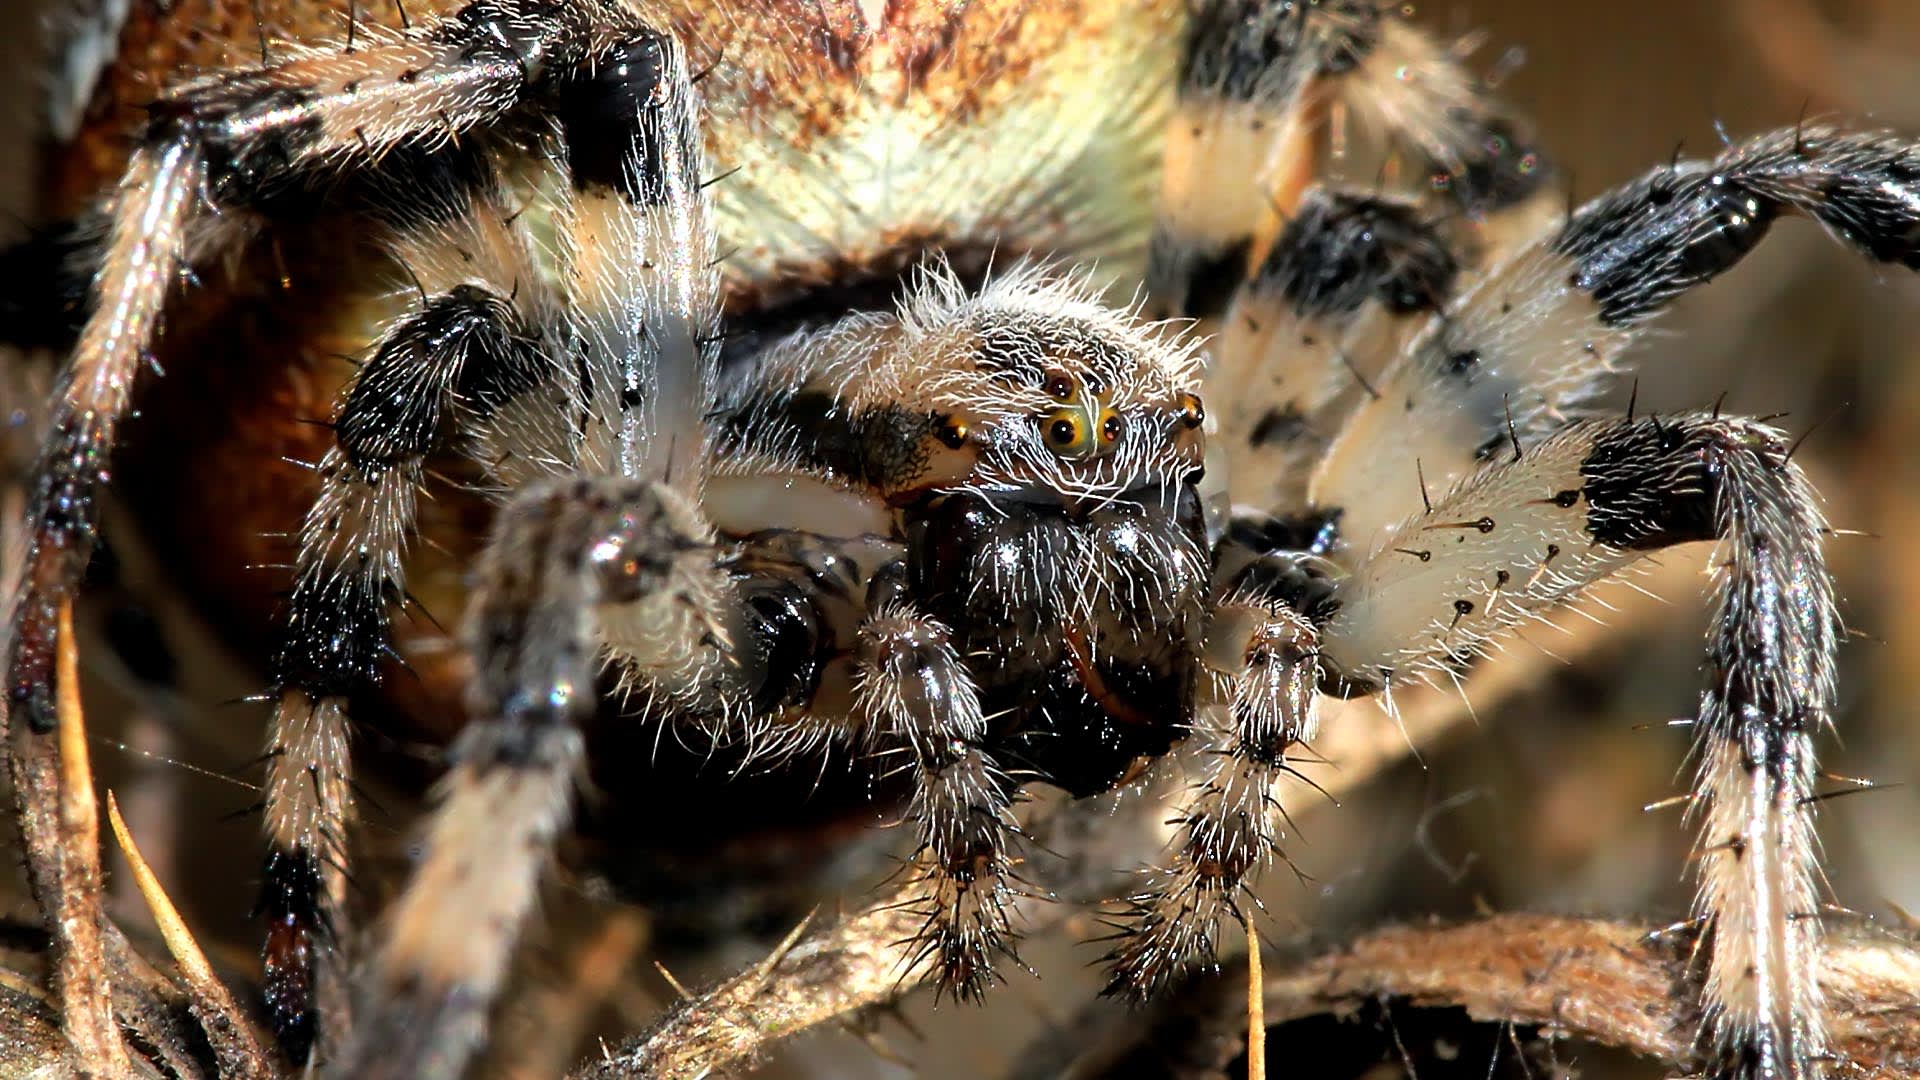 Strach z pavouků patří mezi nejrozšířenější fobie